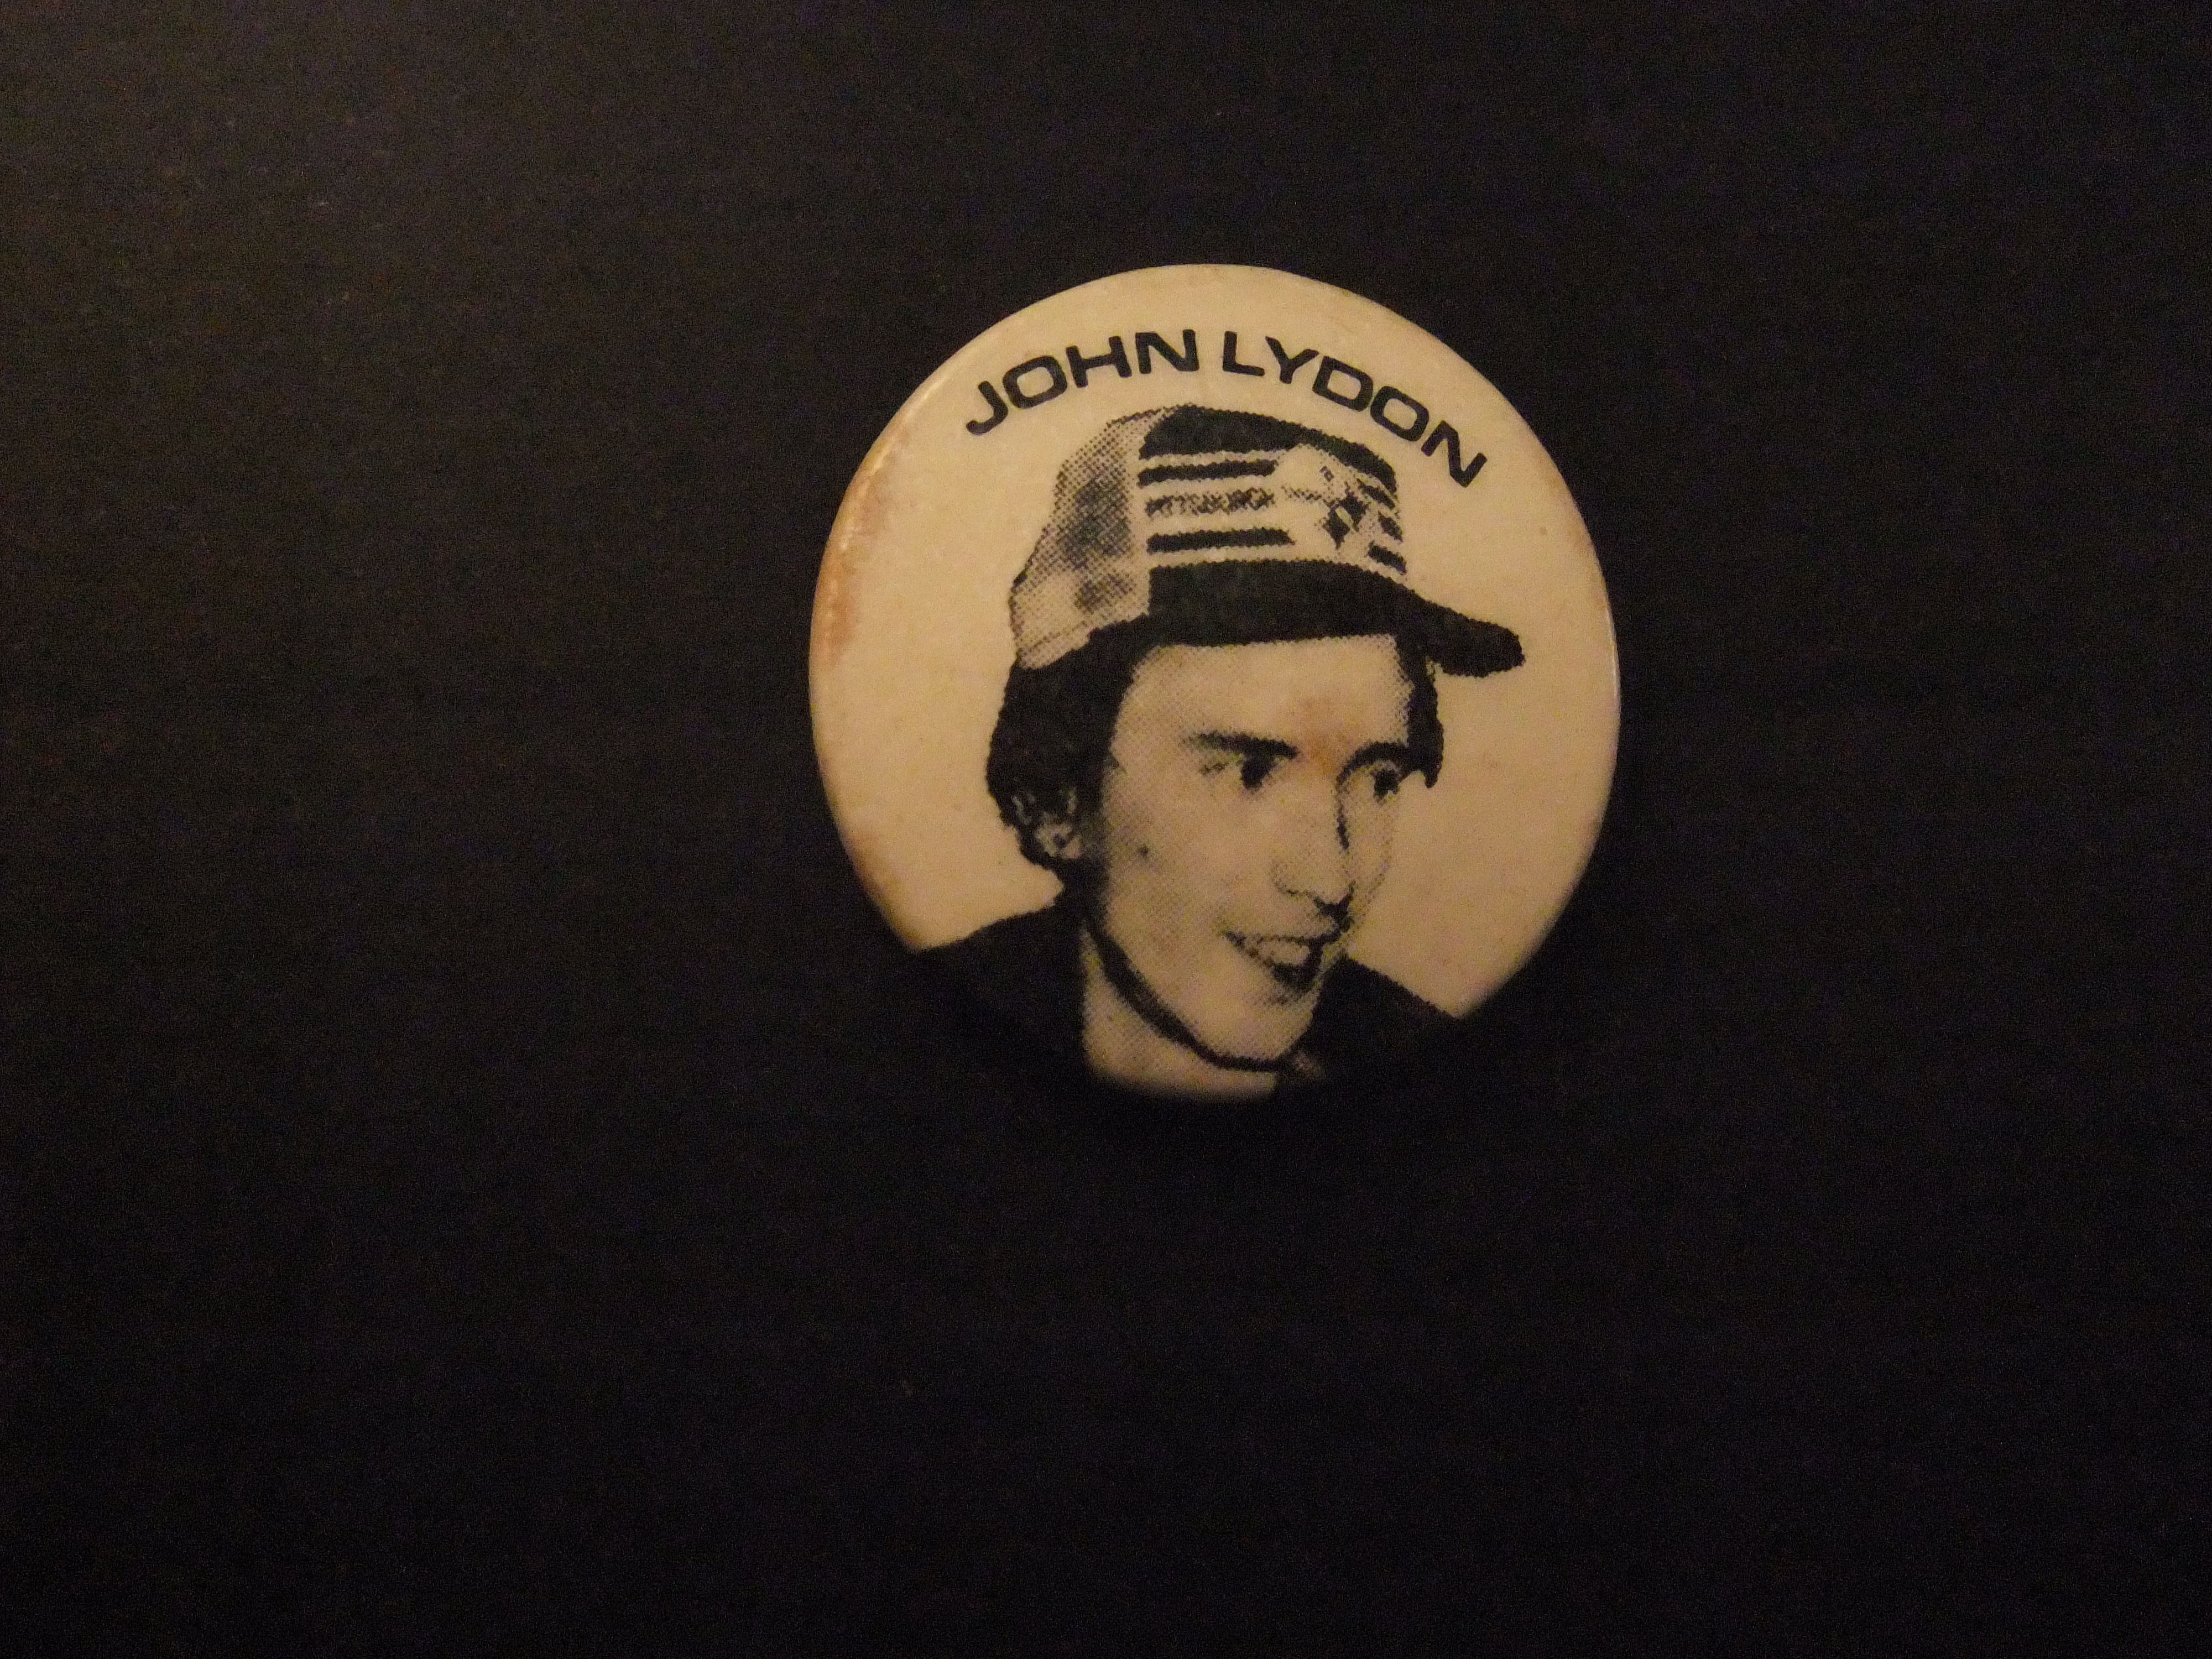 John Lydon zanger van de Sex Pistols met pet